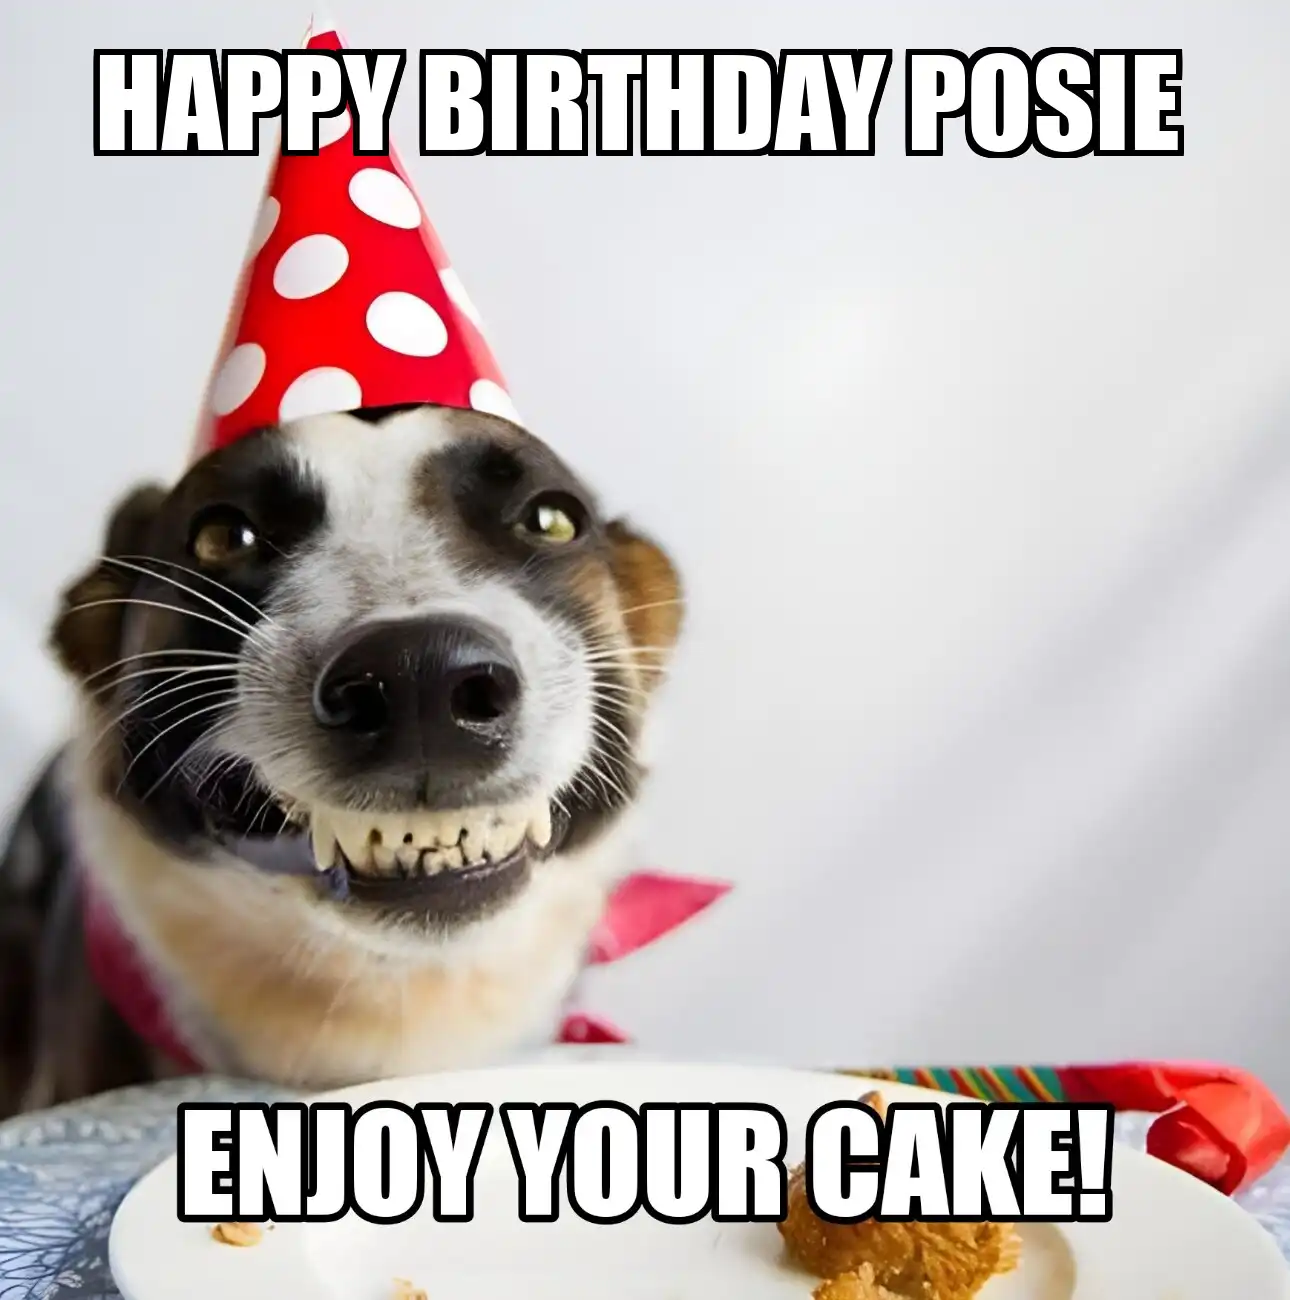 Happy Birthday Posie Enjoy Your Cake Dog Meme